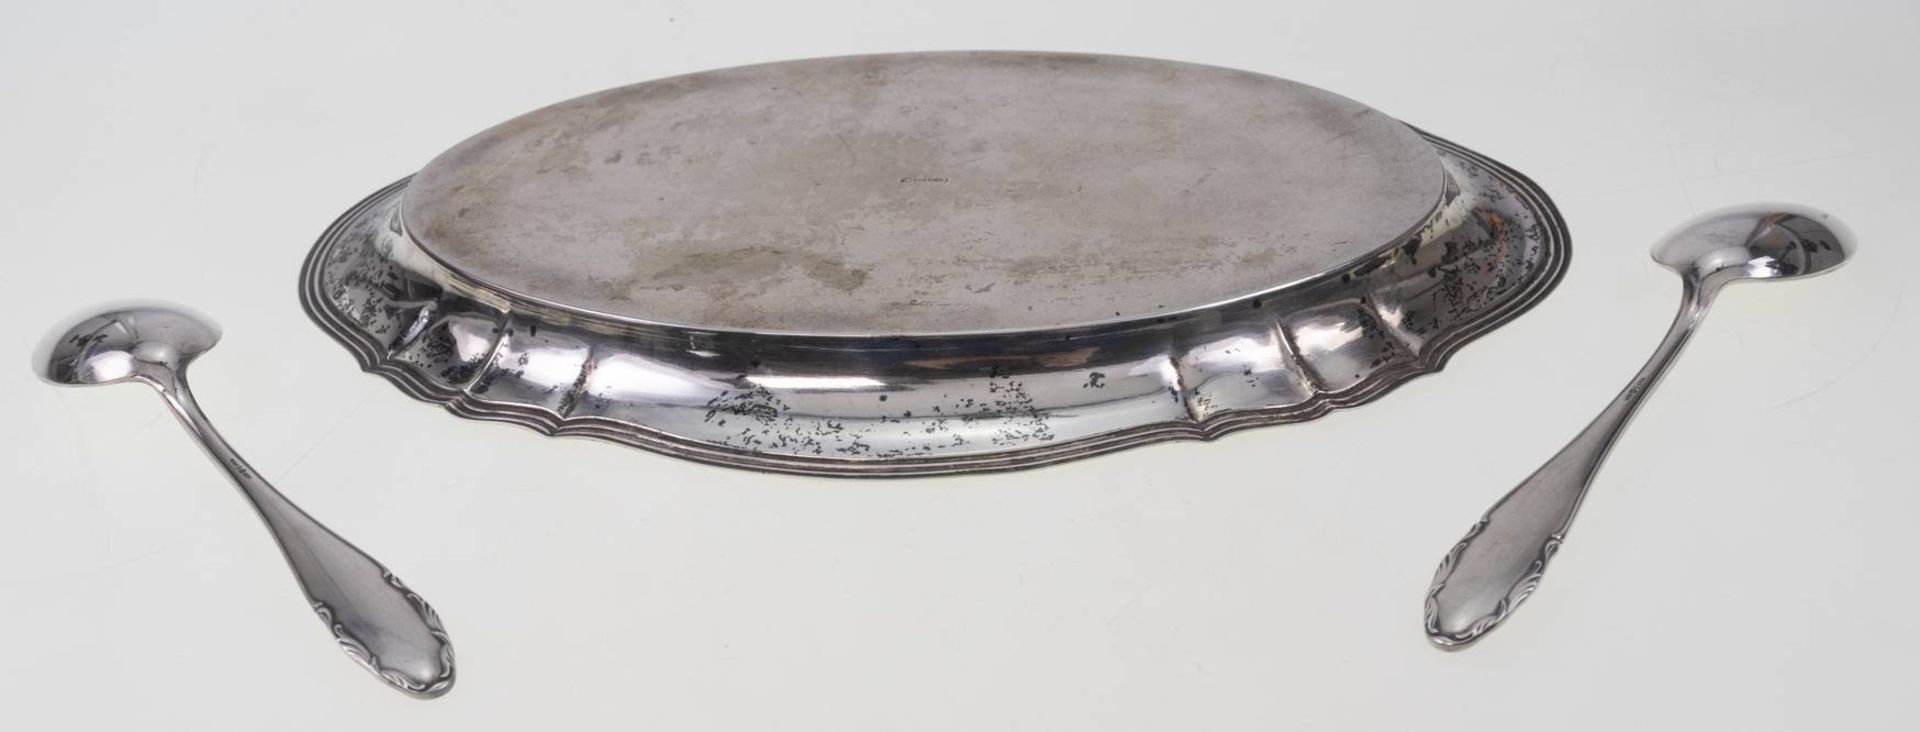 Kleines Tablett 830 Silber ca. 23x 15 cm und 12 Kaffelöffel von WMF in 800 Silber, Gesamtgewicht ca. - Bild 6 aus 6